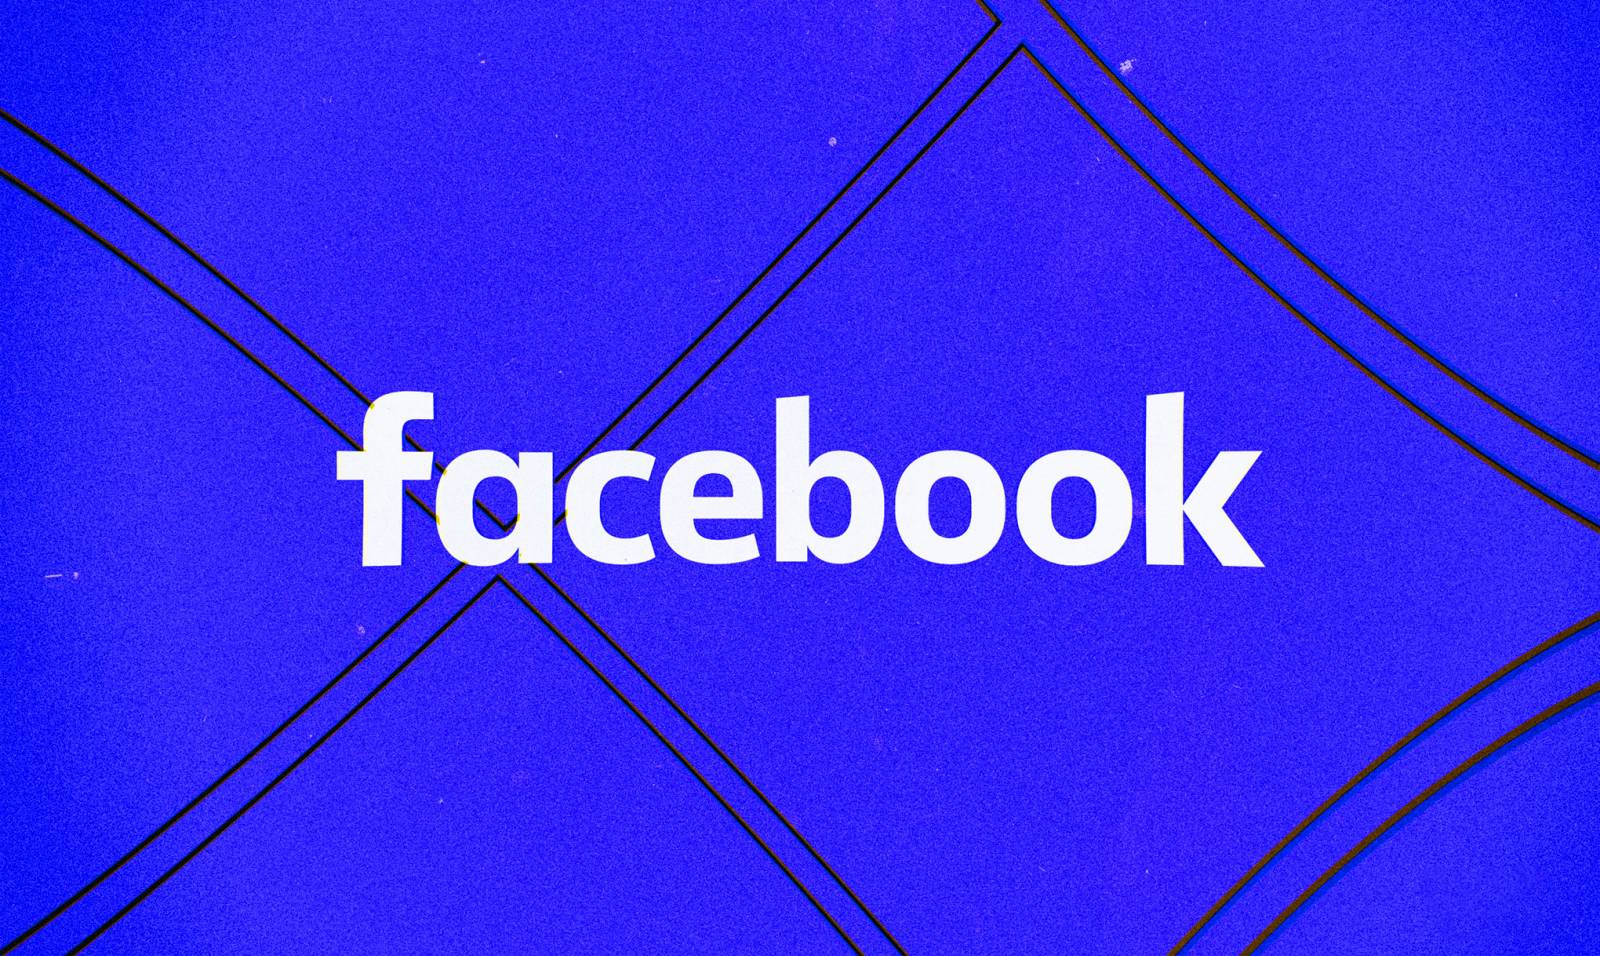 Facebook Update a fost Lansat pentru Aplicatie, ce Schimbari sunt Oferite